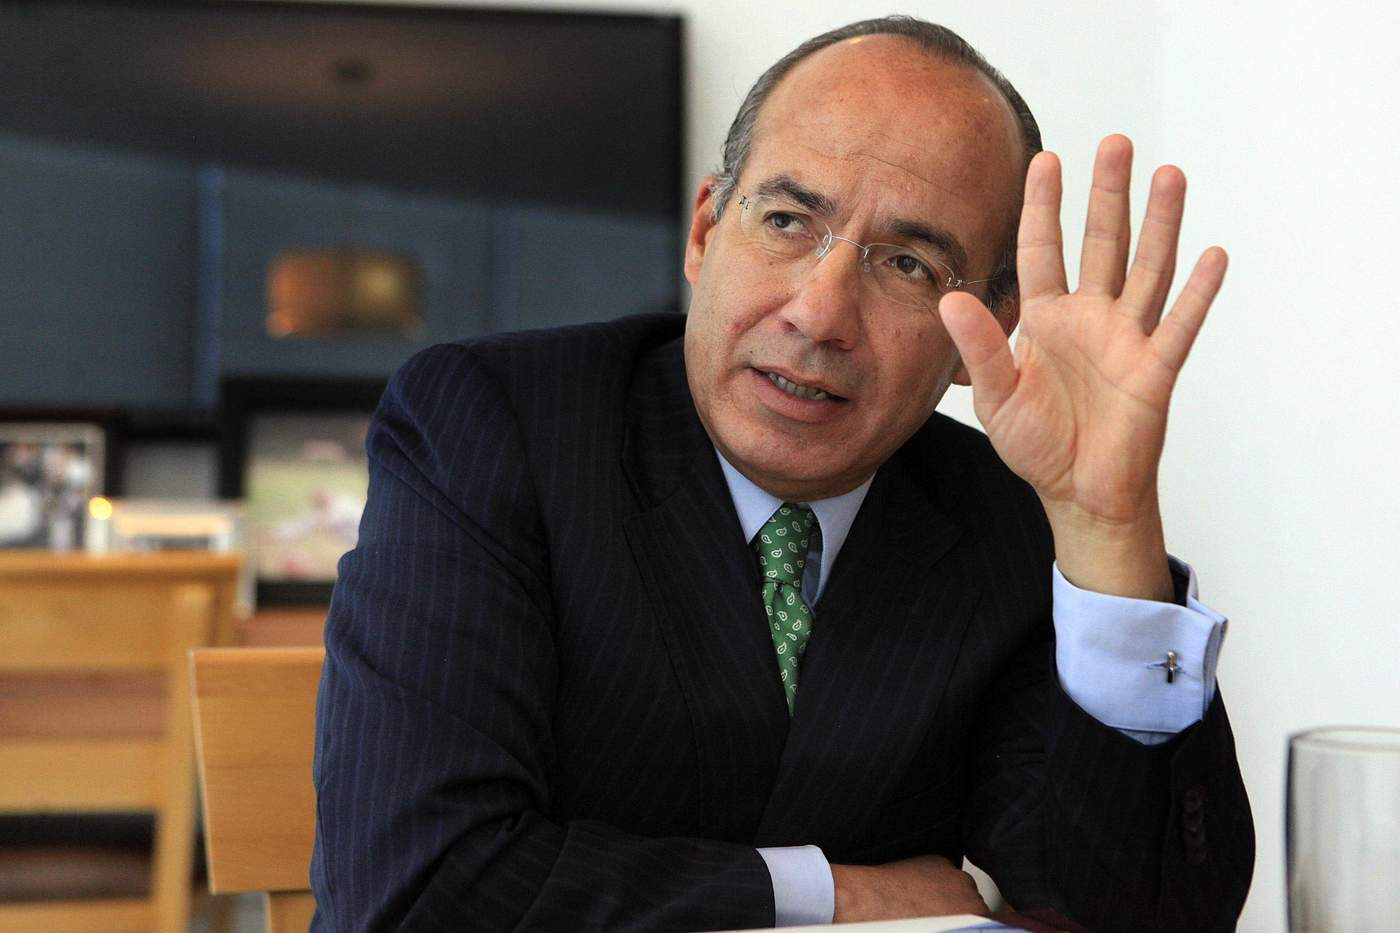 El ex presidente Felipe Calderón Hinojosa señaló que la inversión privada ha reducido los costos para la Comisión Federal de Electricidad (CFE), ya que en todo el mundo el sector privado genera electricidad, en particular renovable. (ARCHIVO)